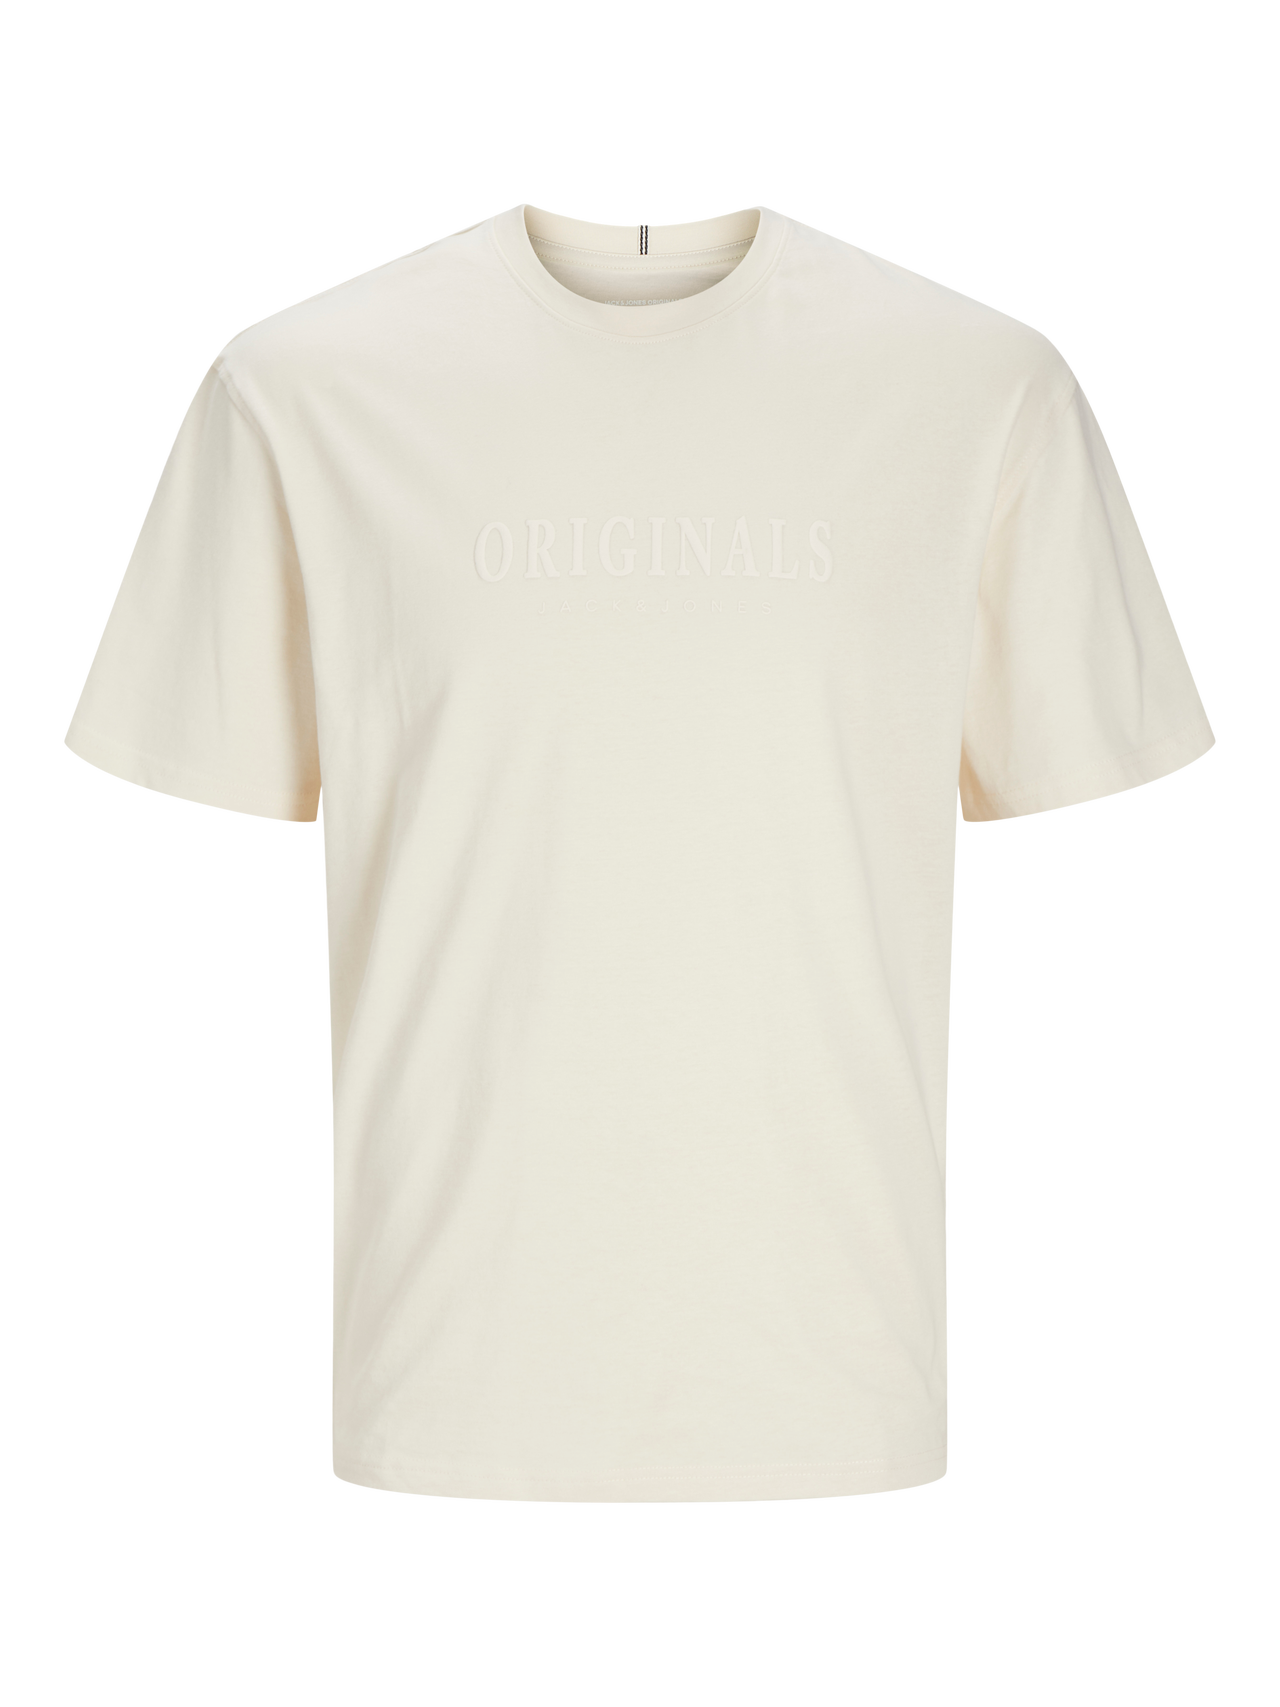 Jack & Jones Gedruckt Rundhals T-shirt -Antique White - 12262494